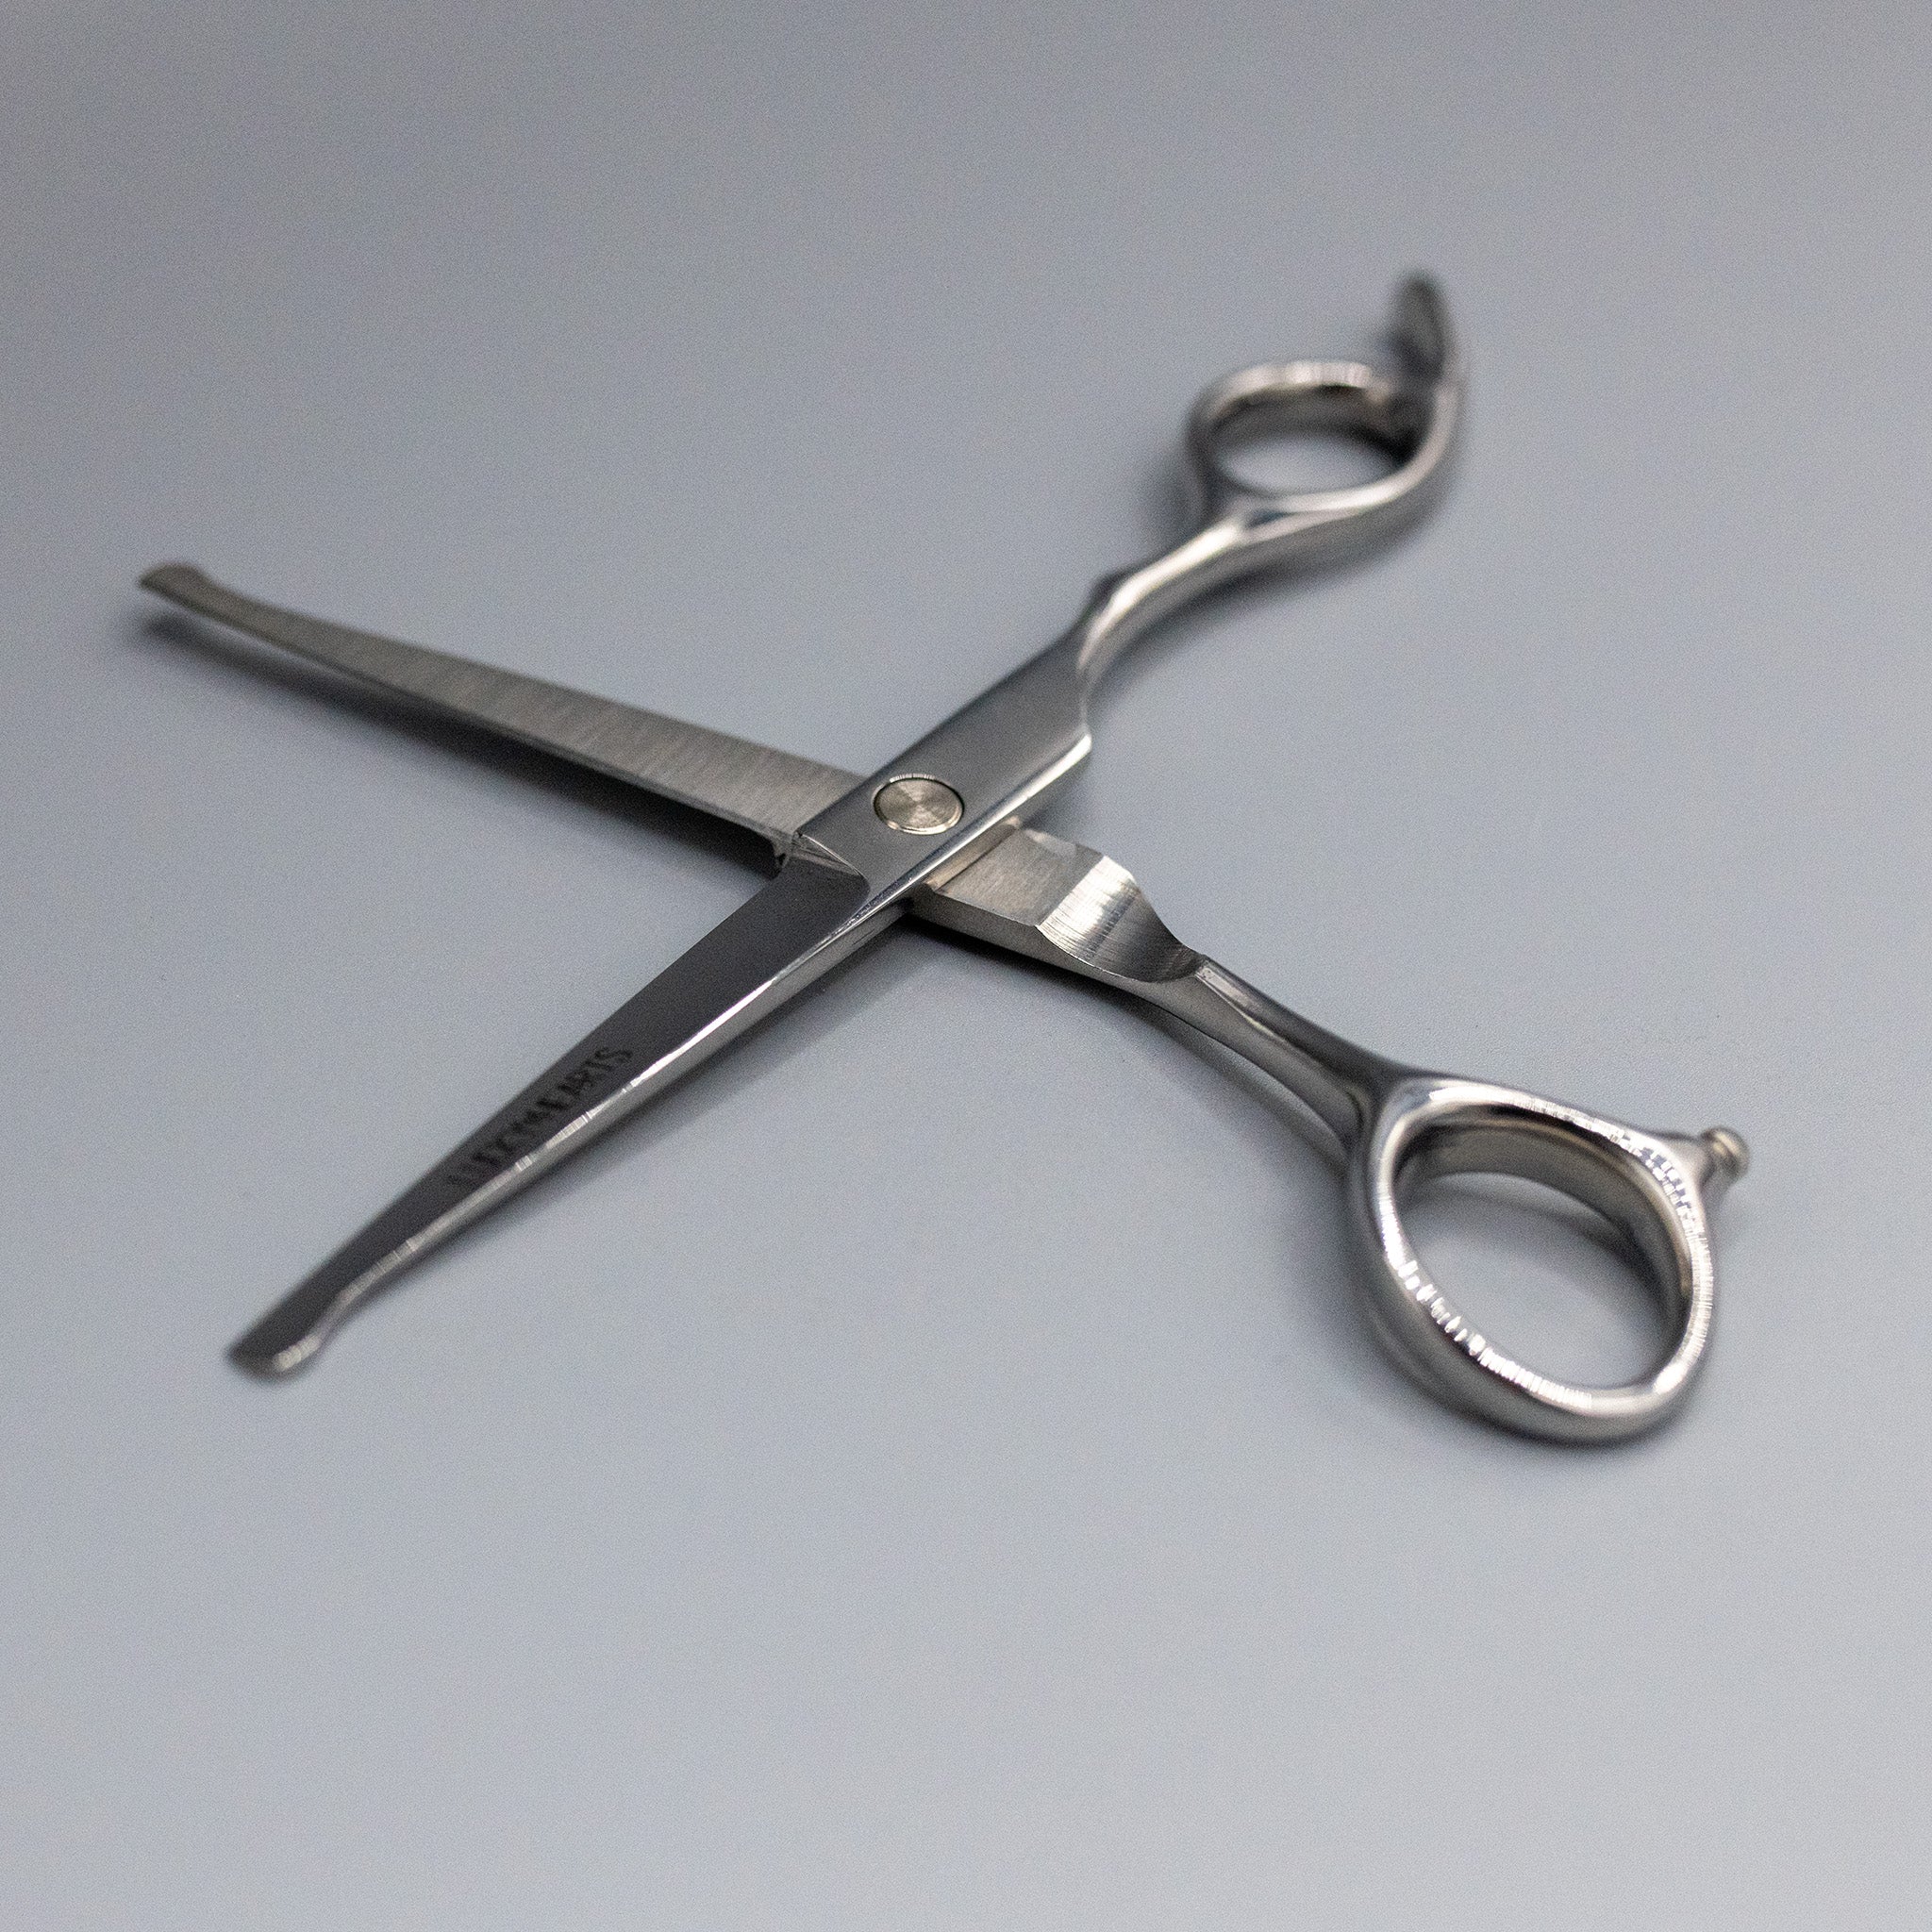 rounded scissors